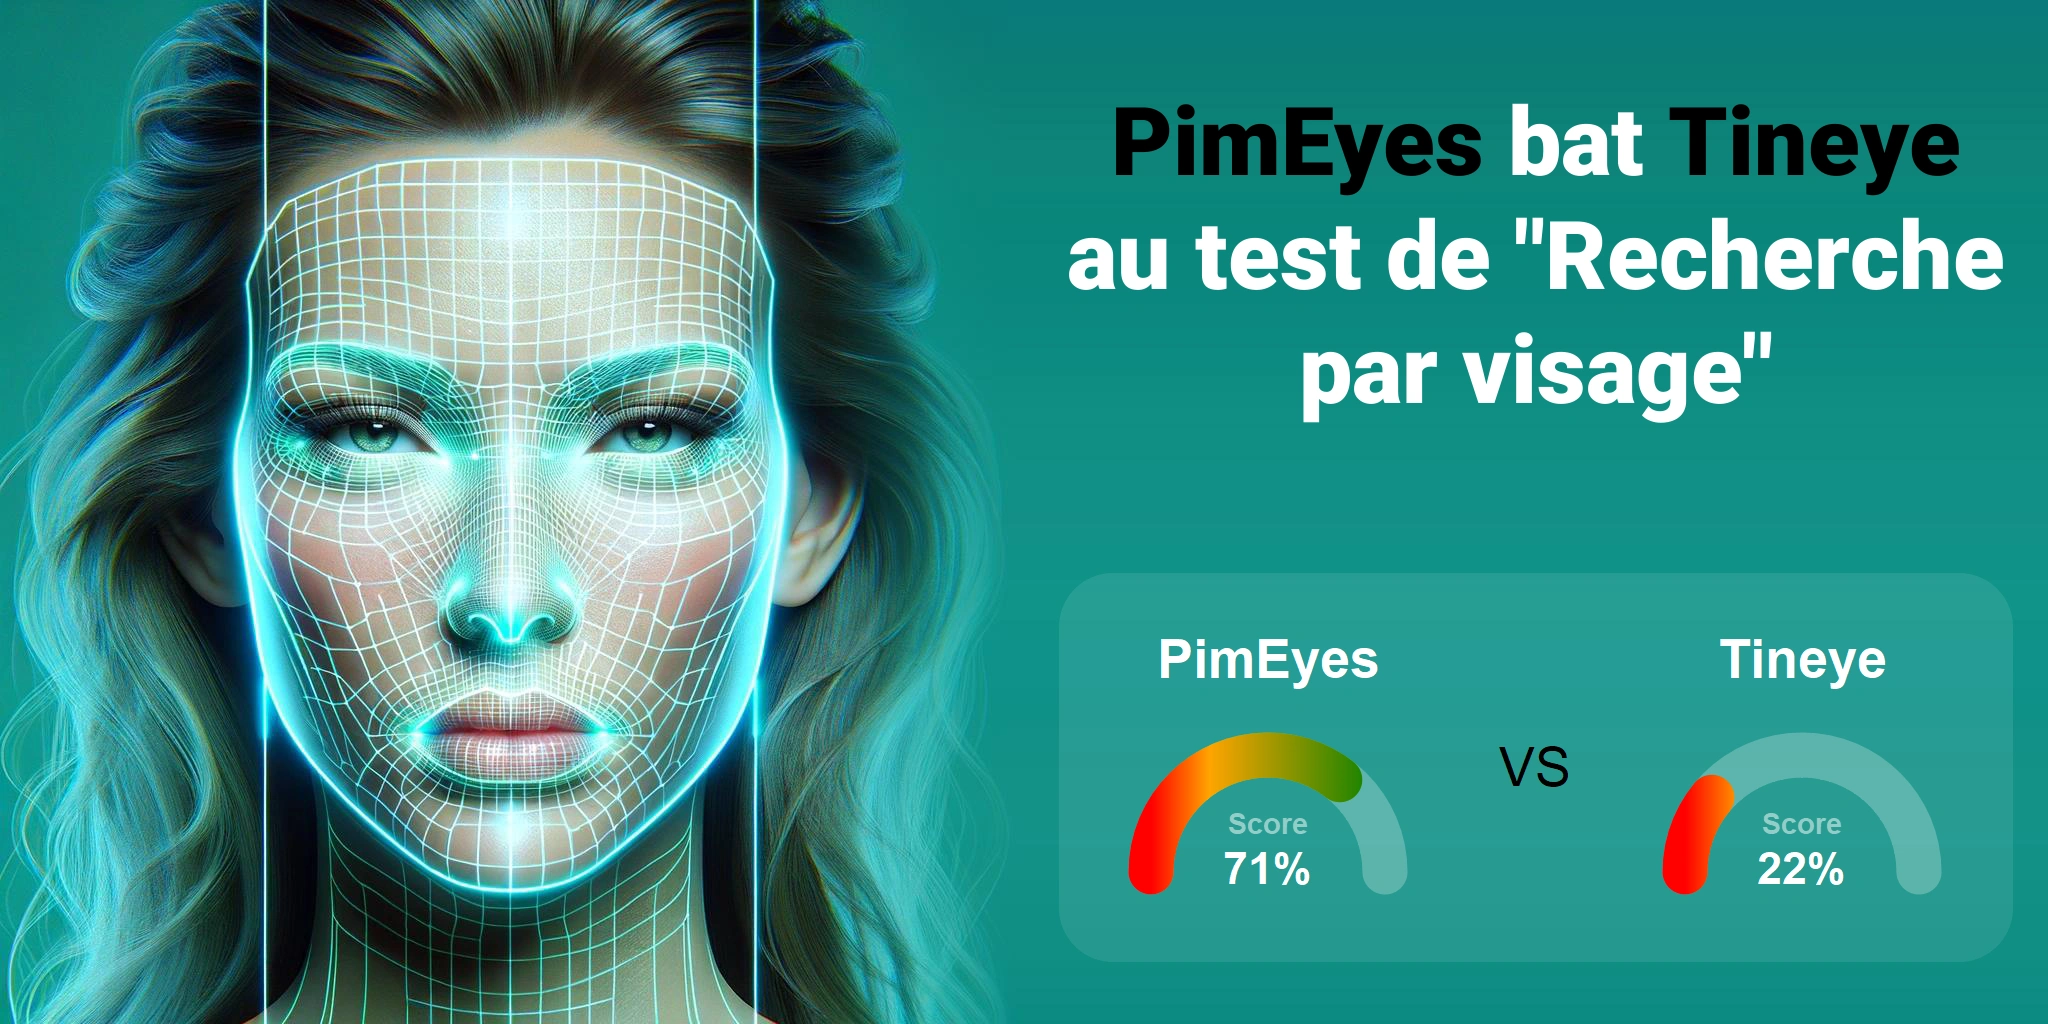 Quel est le meilleur pour la recherche faciale : <br>PimEyes ou Tineye ?